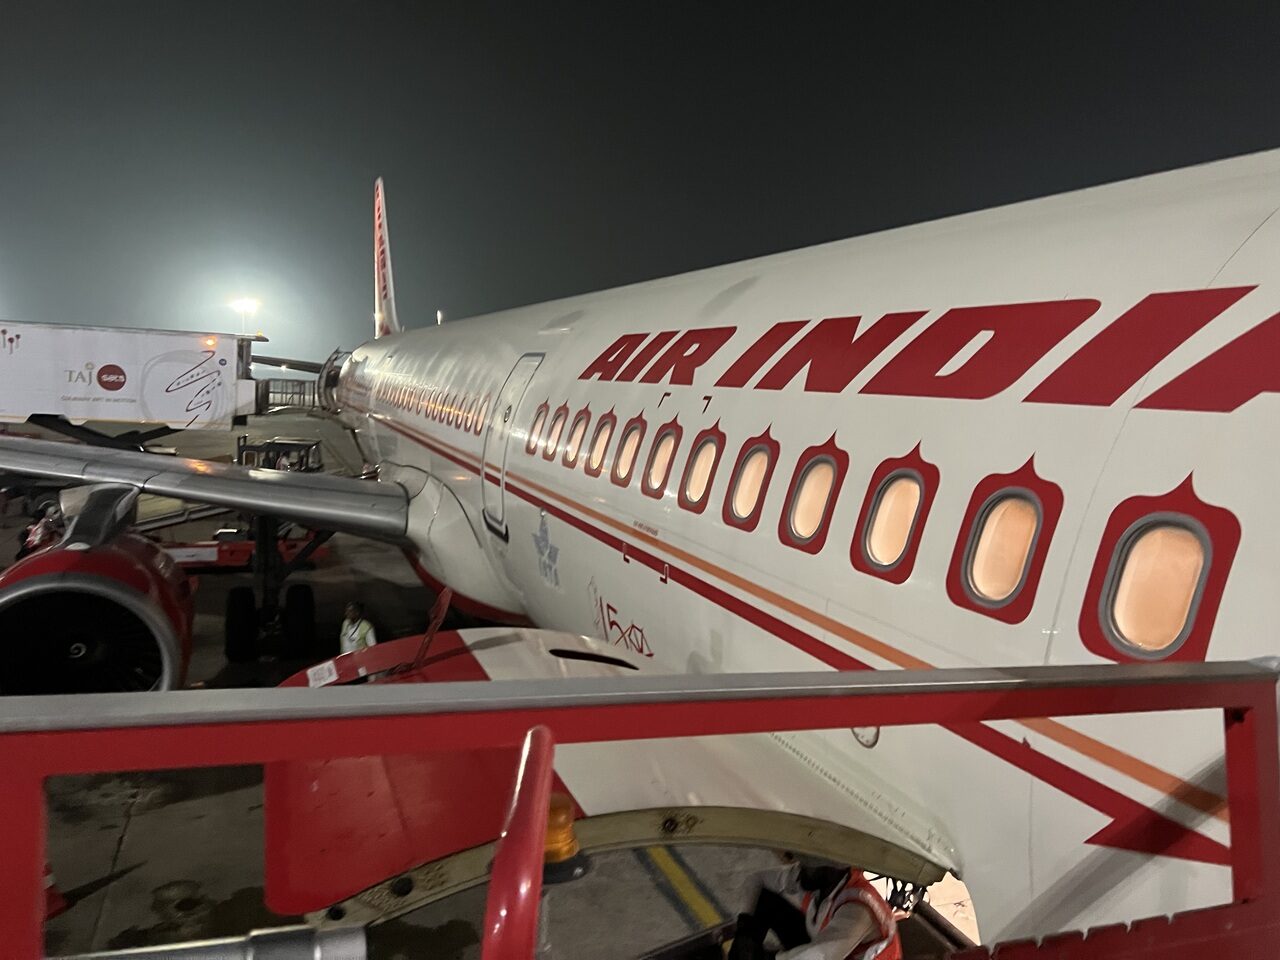 An Air India A321 flight on the tarmac at Chennai bound for Delhi.